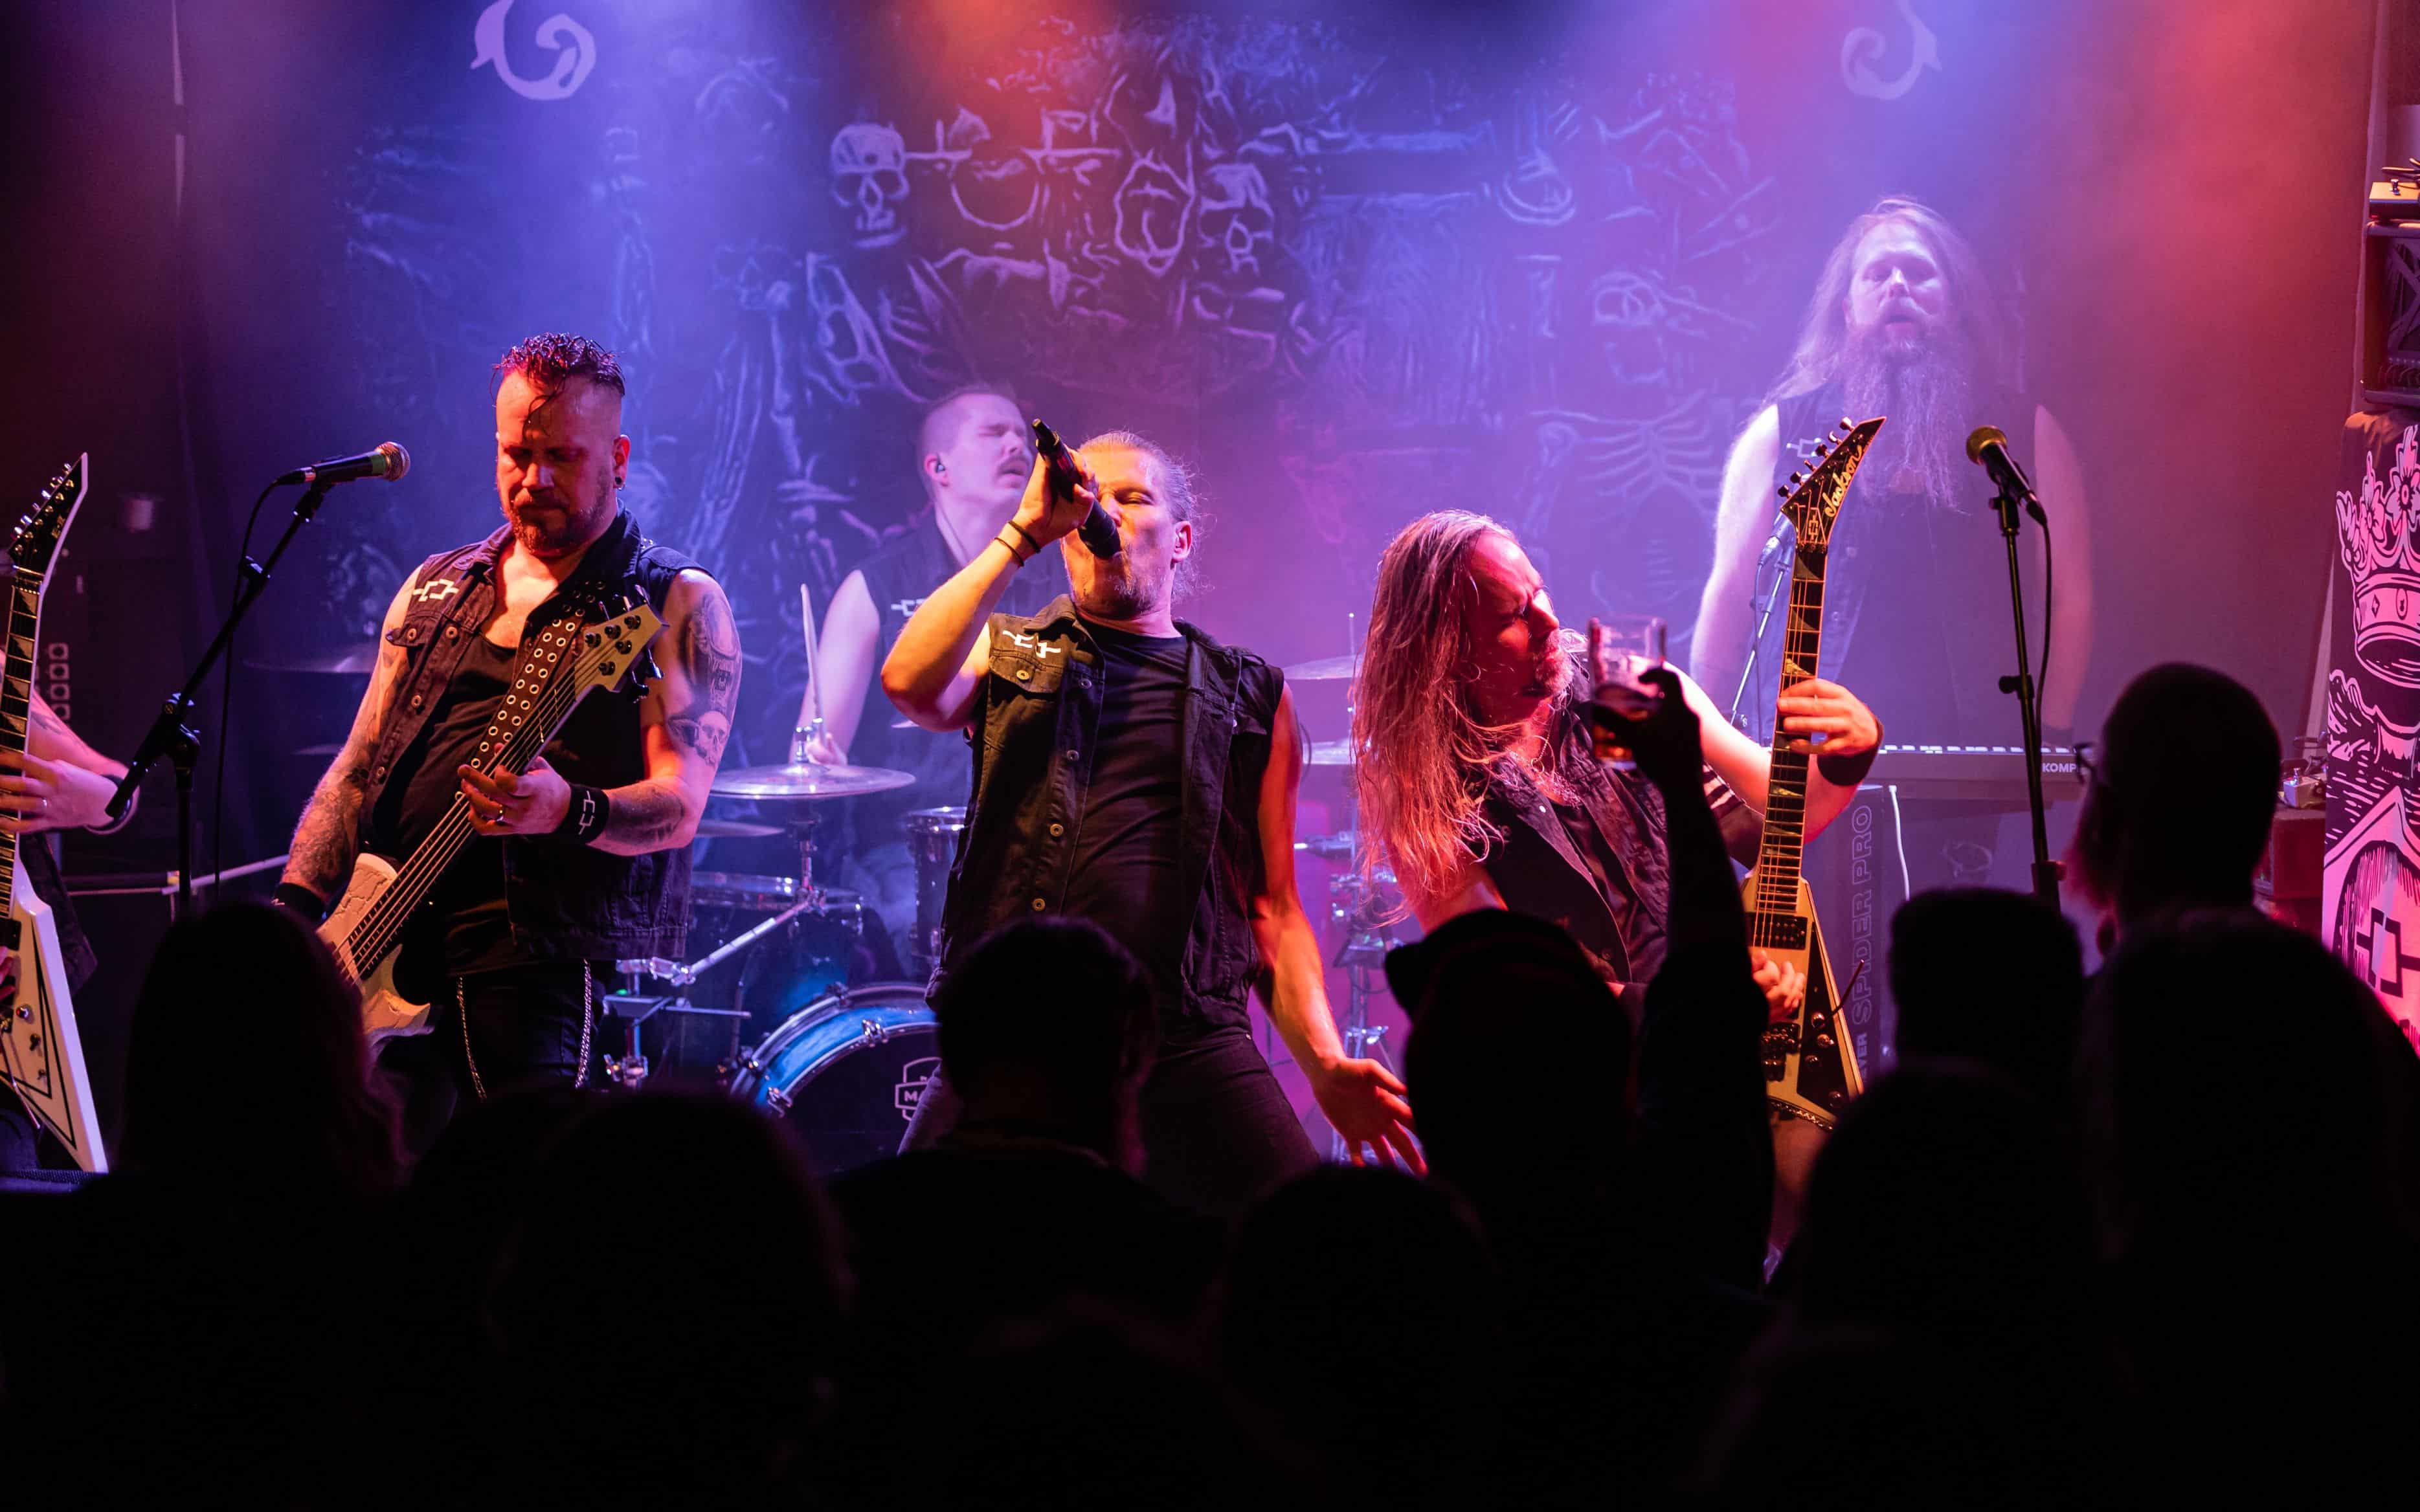 HAMEENLINNA, FINLAND – NOVEMBER 10 2021: Heavy metal band Omnium Gatherum performing at Suistoklubi. From left to right: Mikko Kivisto, Atte Pesonen, Jukka Pelkonen, Markus Vanhala, Aapo Koivisto